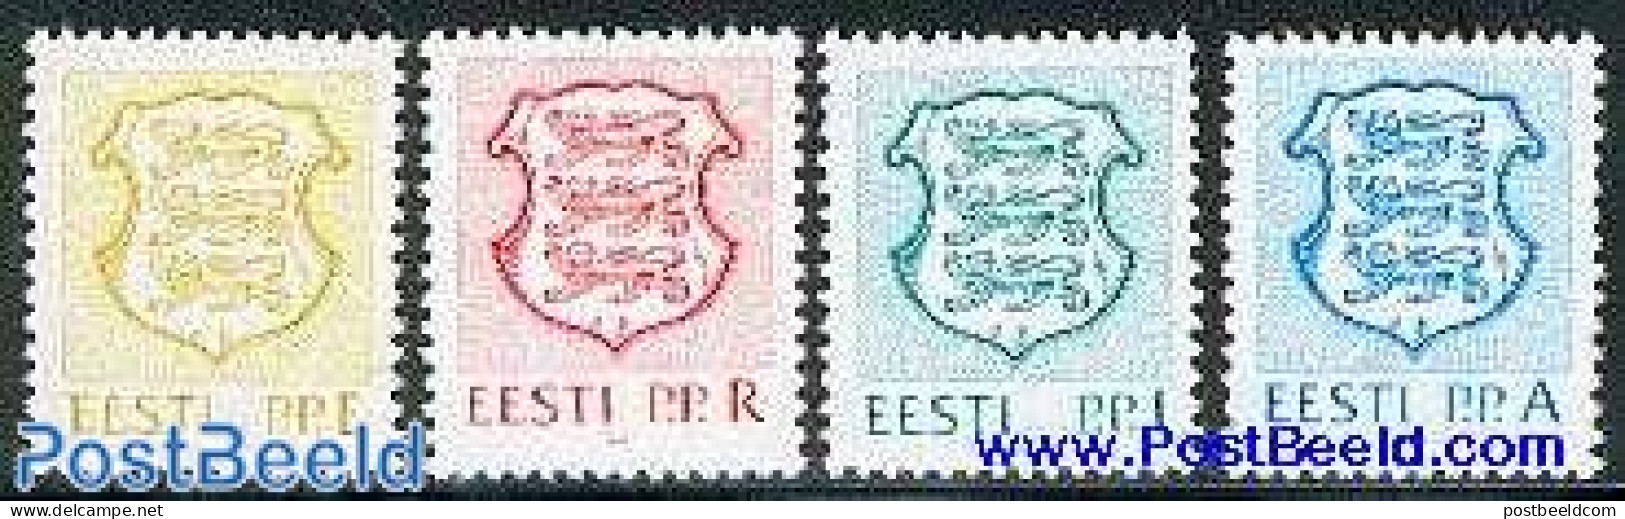 Estonia 1992 Definitives 4v, Mint NH, History - Coat Of Arms - Estland